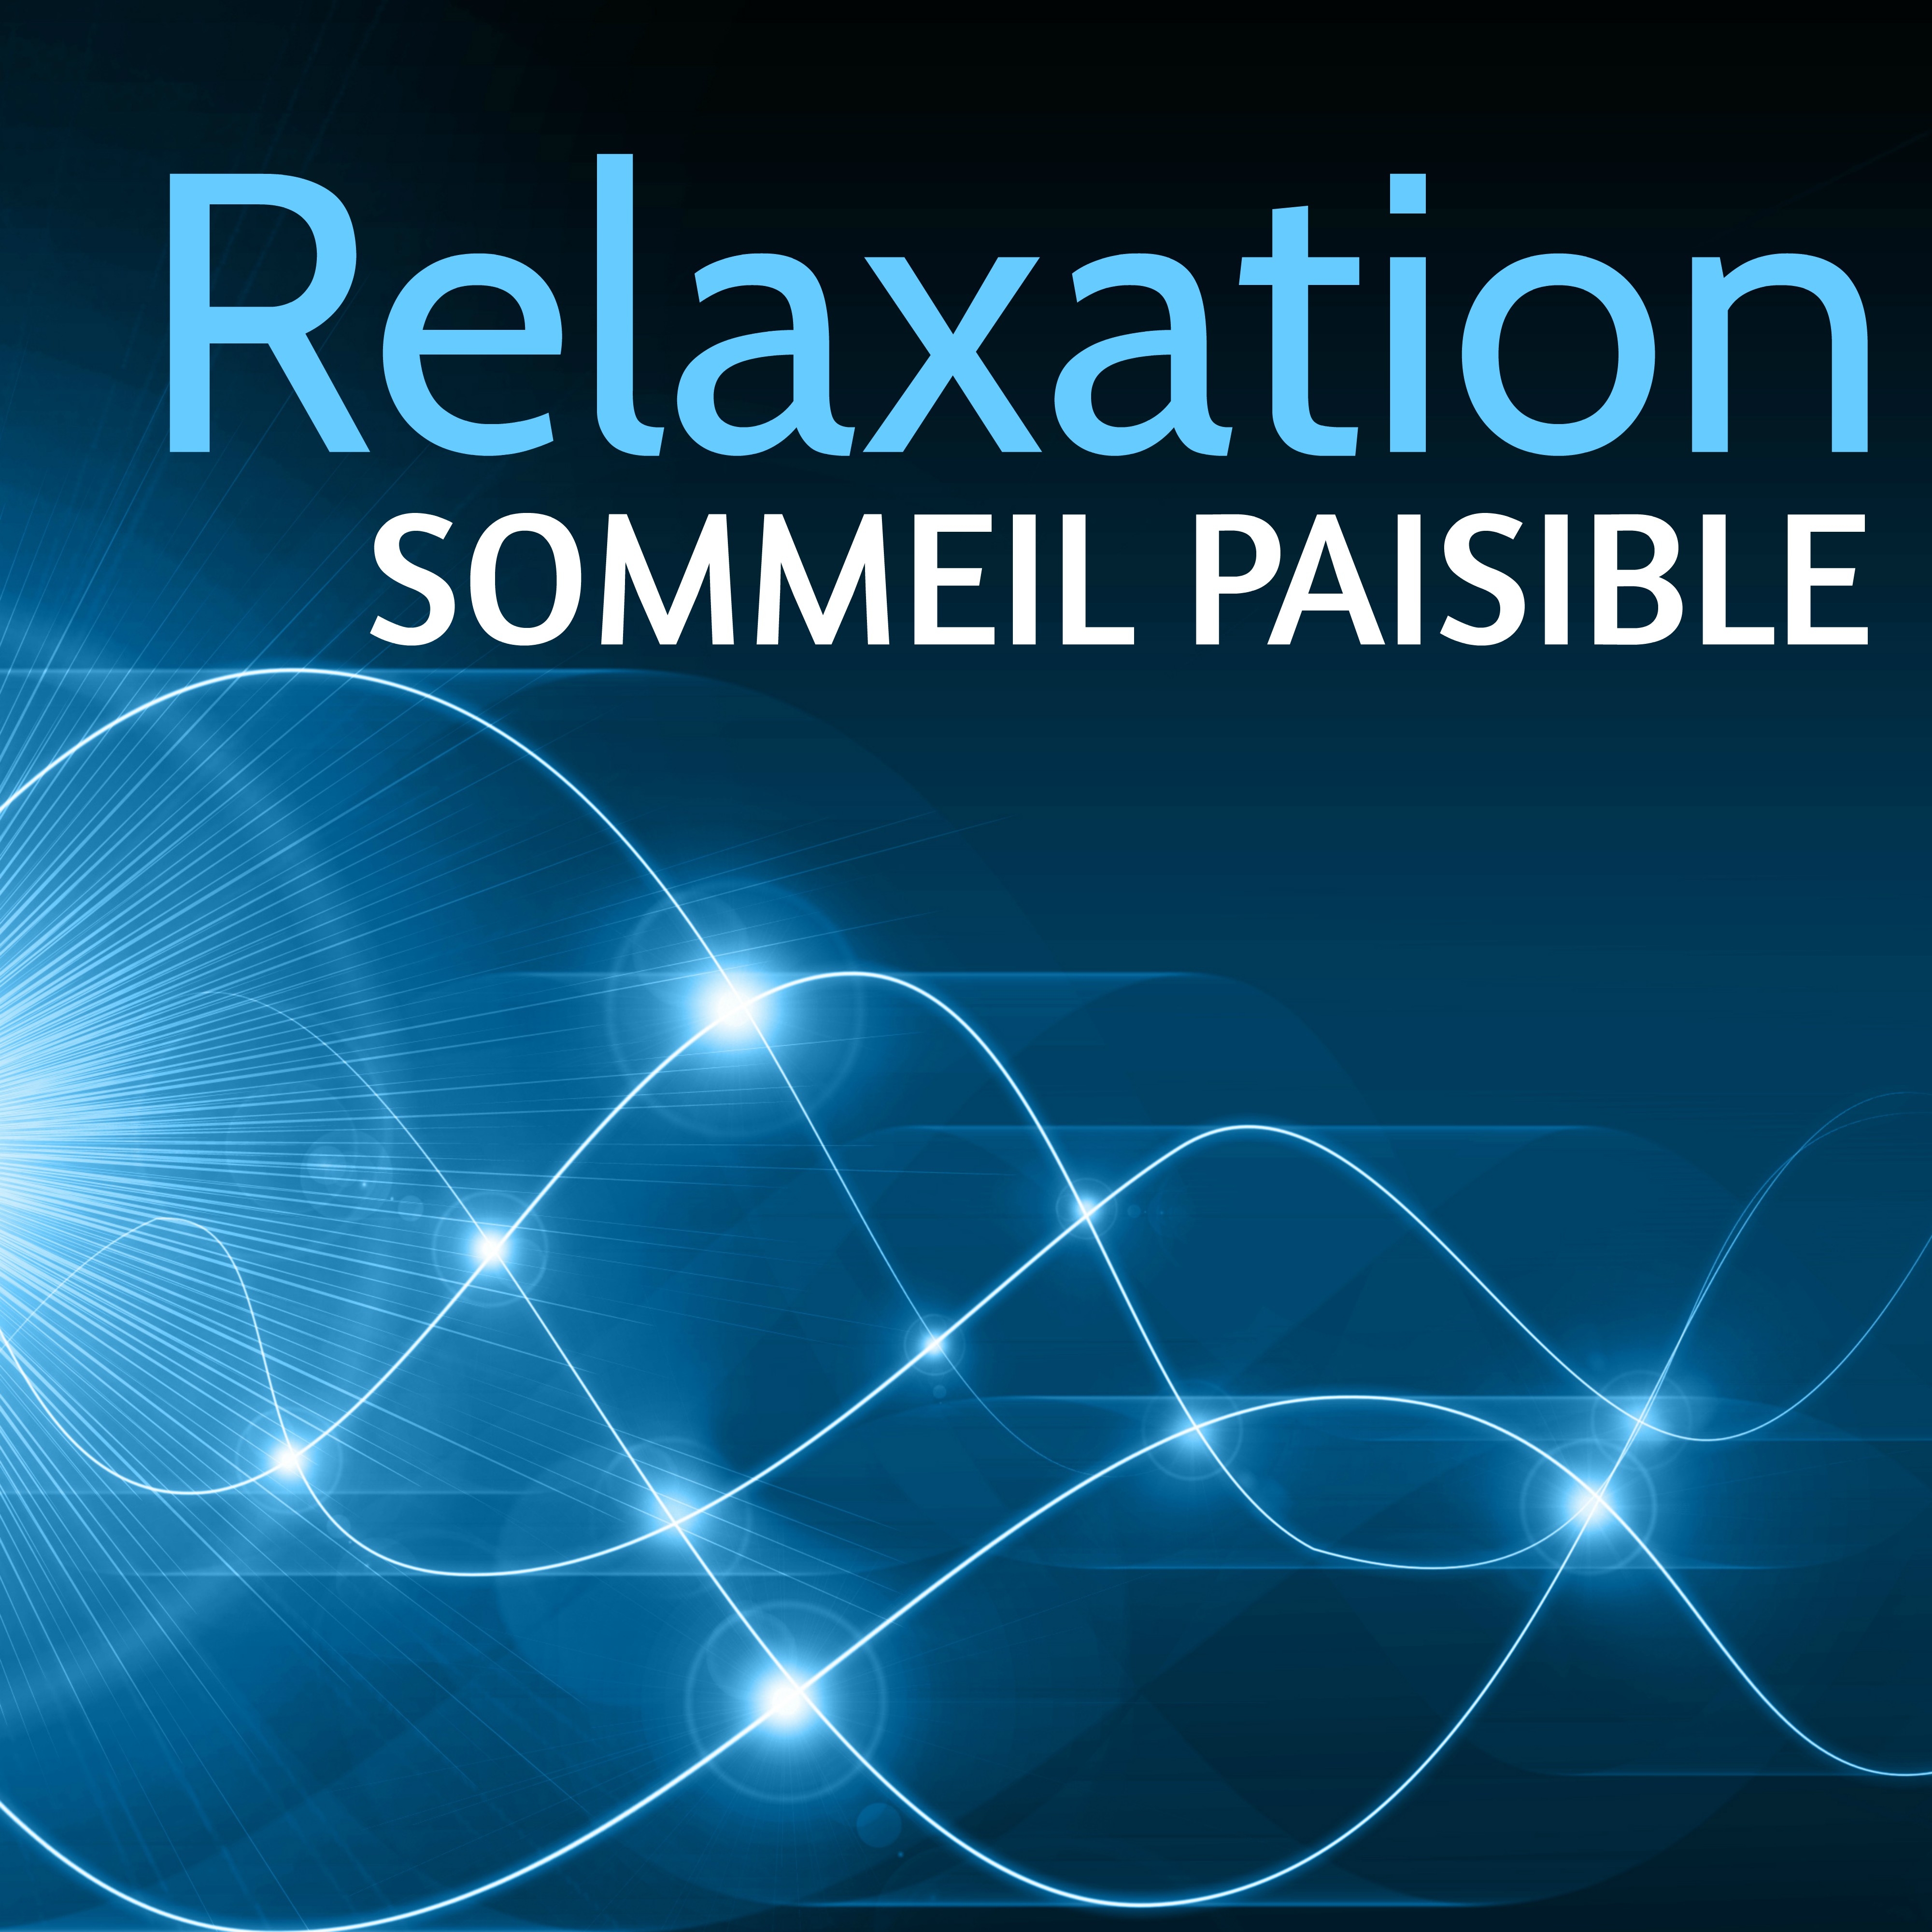 Relaxation Sommeil Paisible: Morceaux Relaxante pour Sophrologie, Méditation Pleine Conscience et Dormir